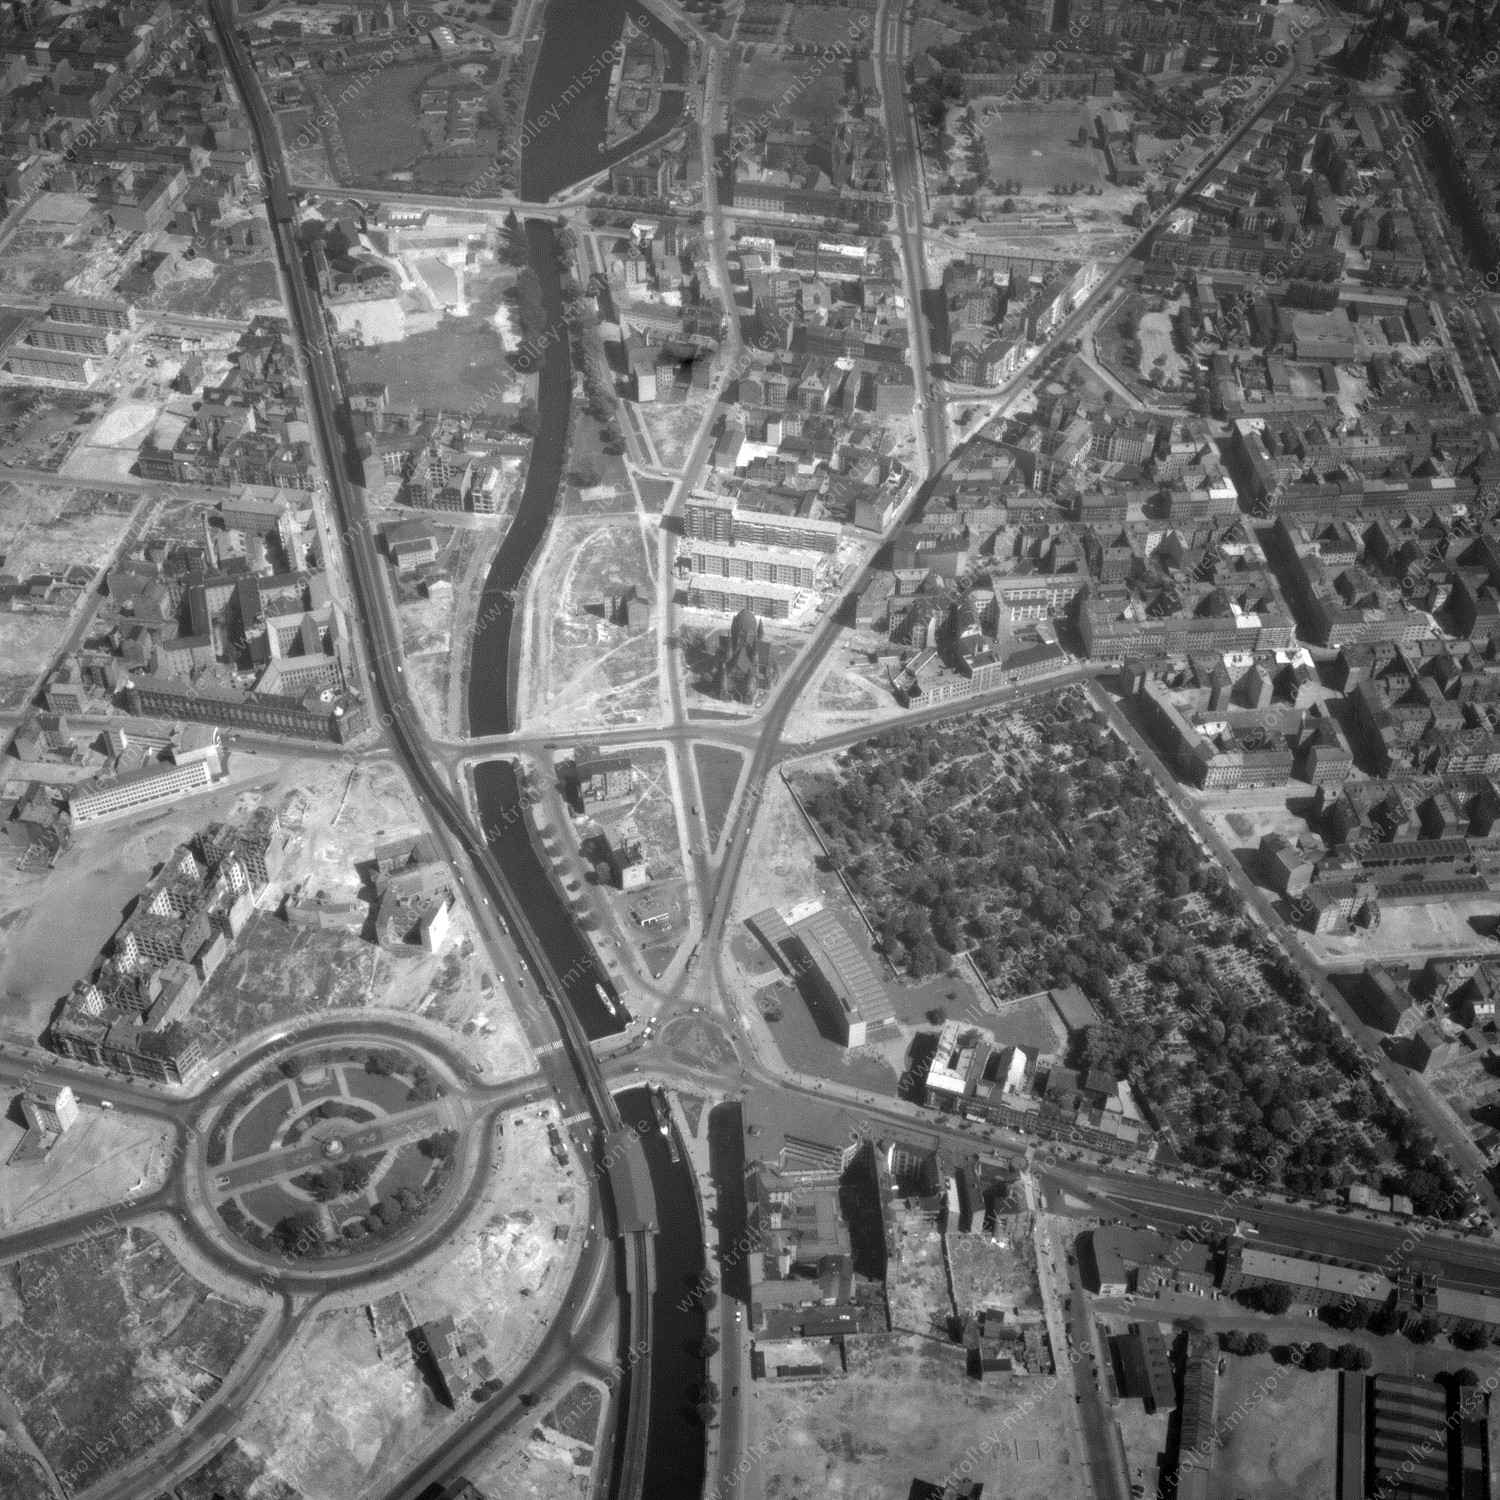 Alte Fotos und Luftbilder von Berlin - Luftbildaufnahme Nr. 06 - Historische Luftaufnahmen von West-Berlin aus dem Jahr 1954 - Flugstrecke Juliett